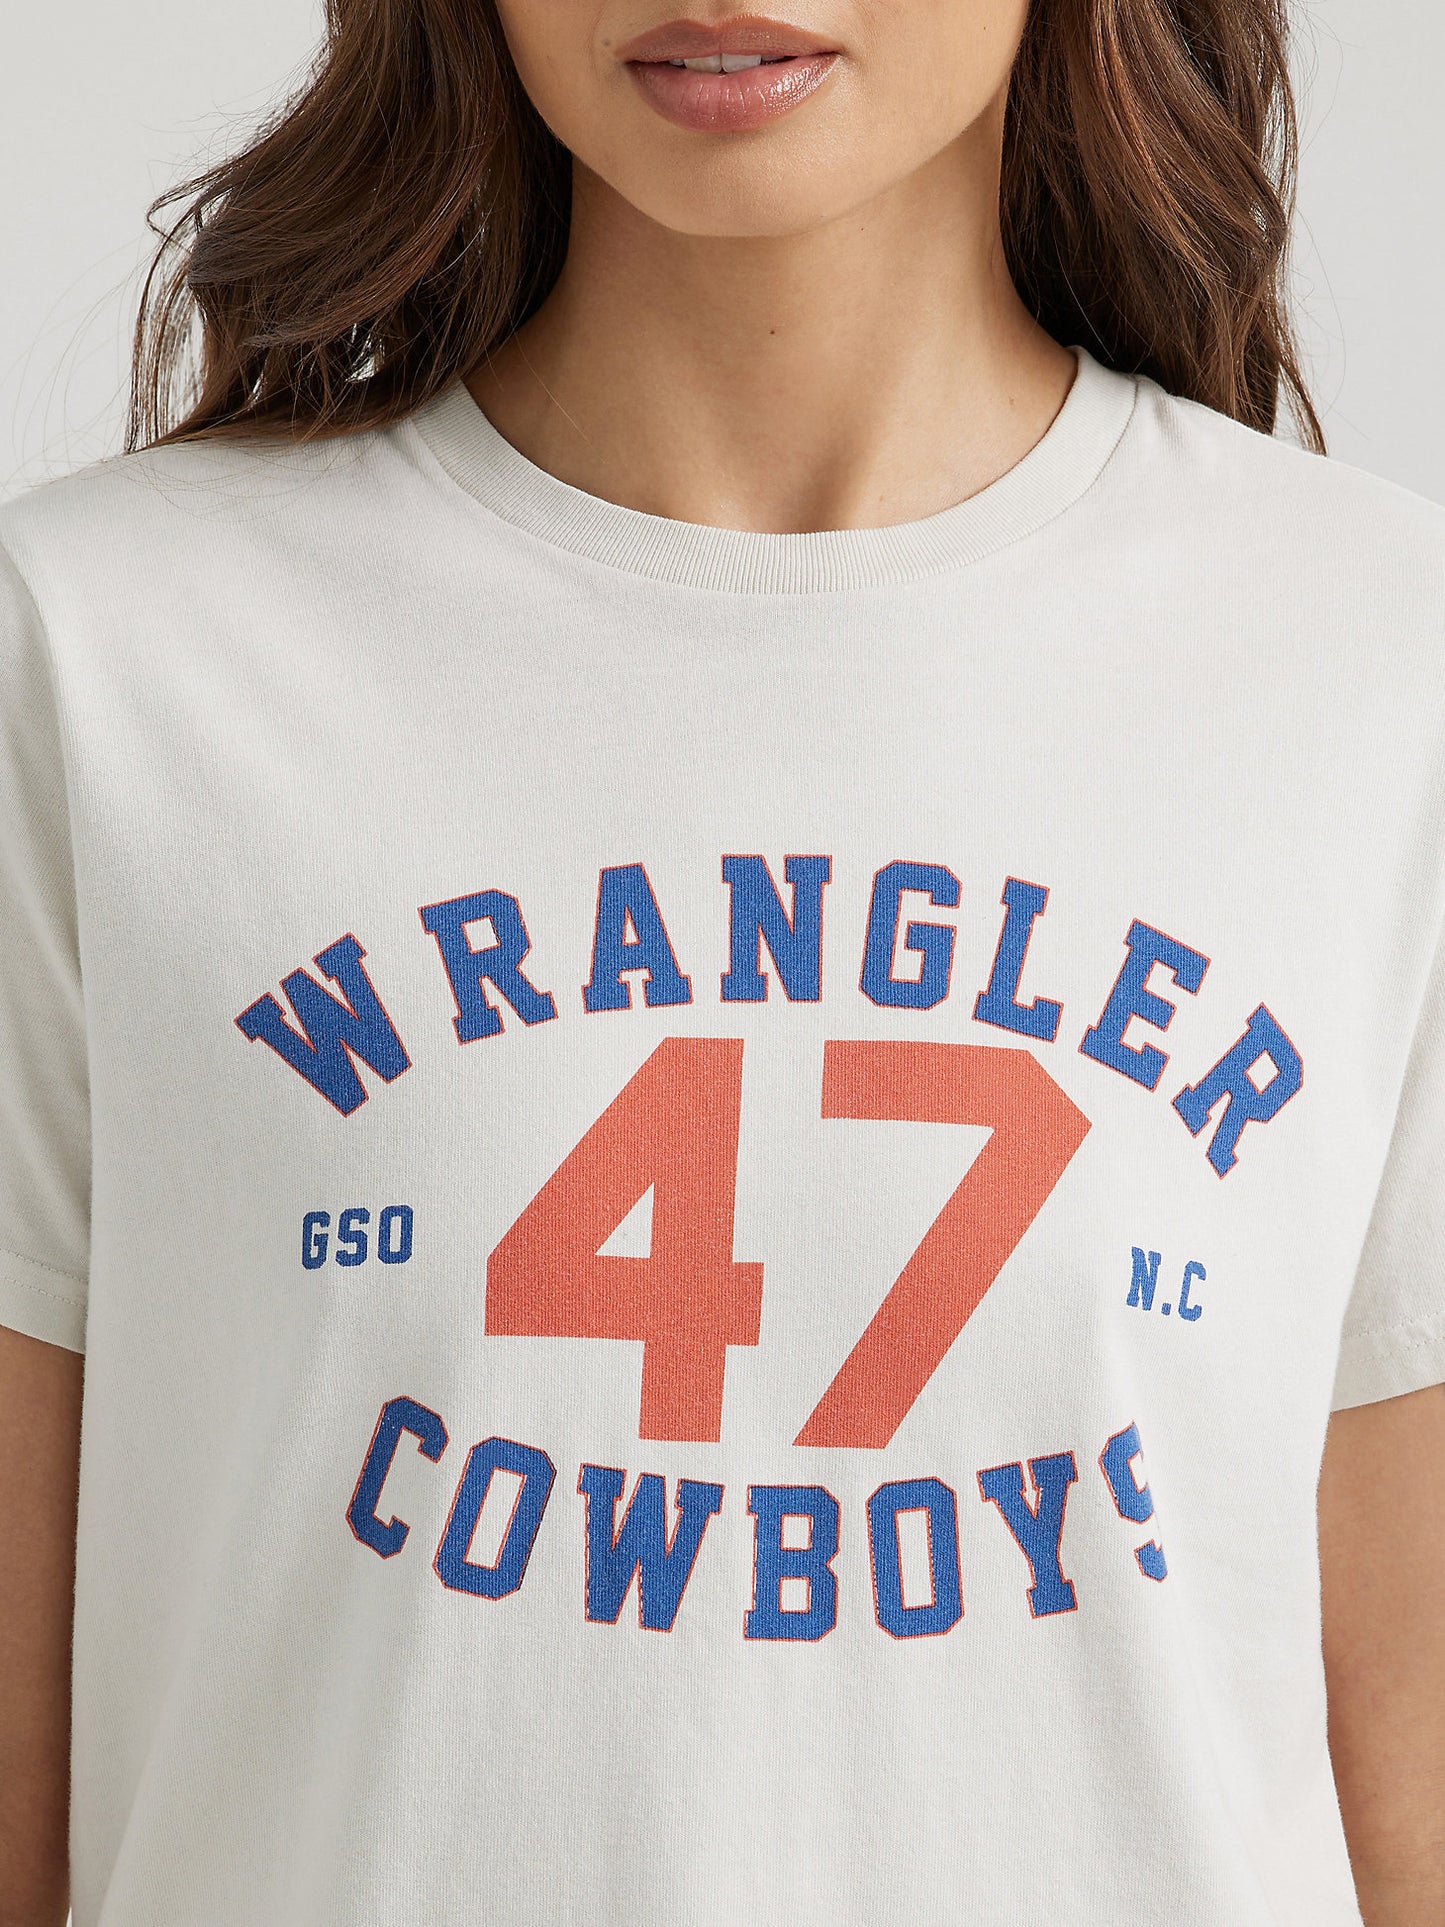 Wrangler 47 Cowboys Women's Tee